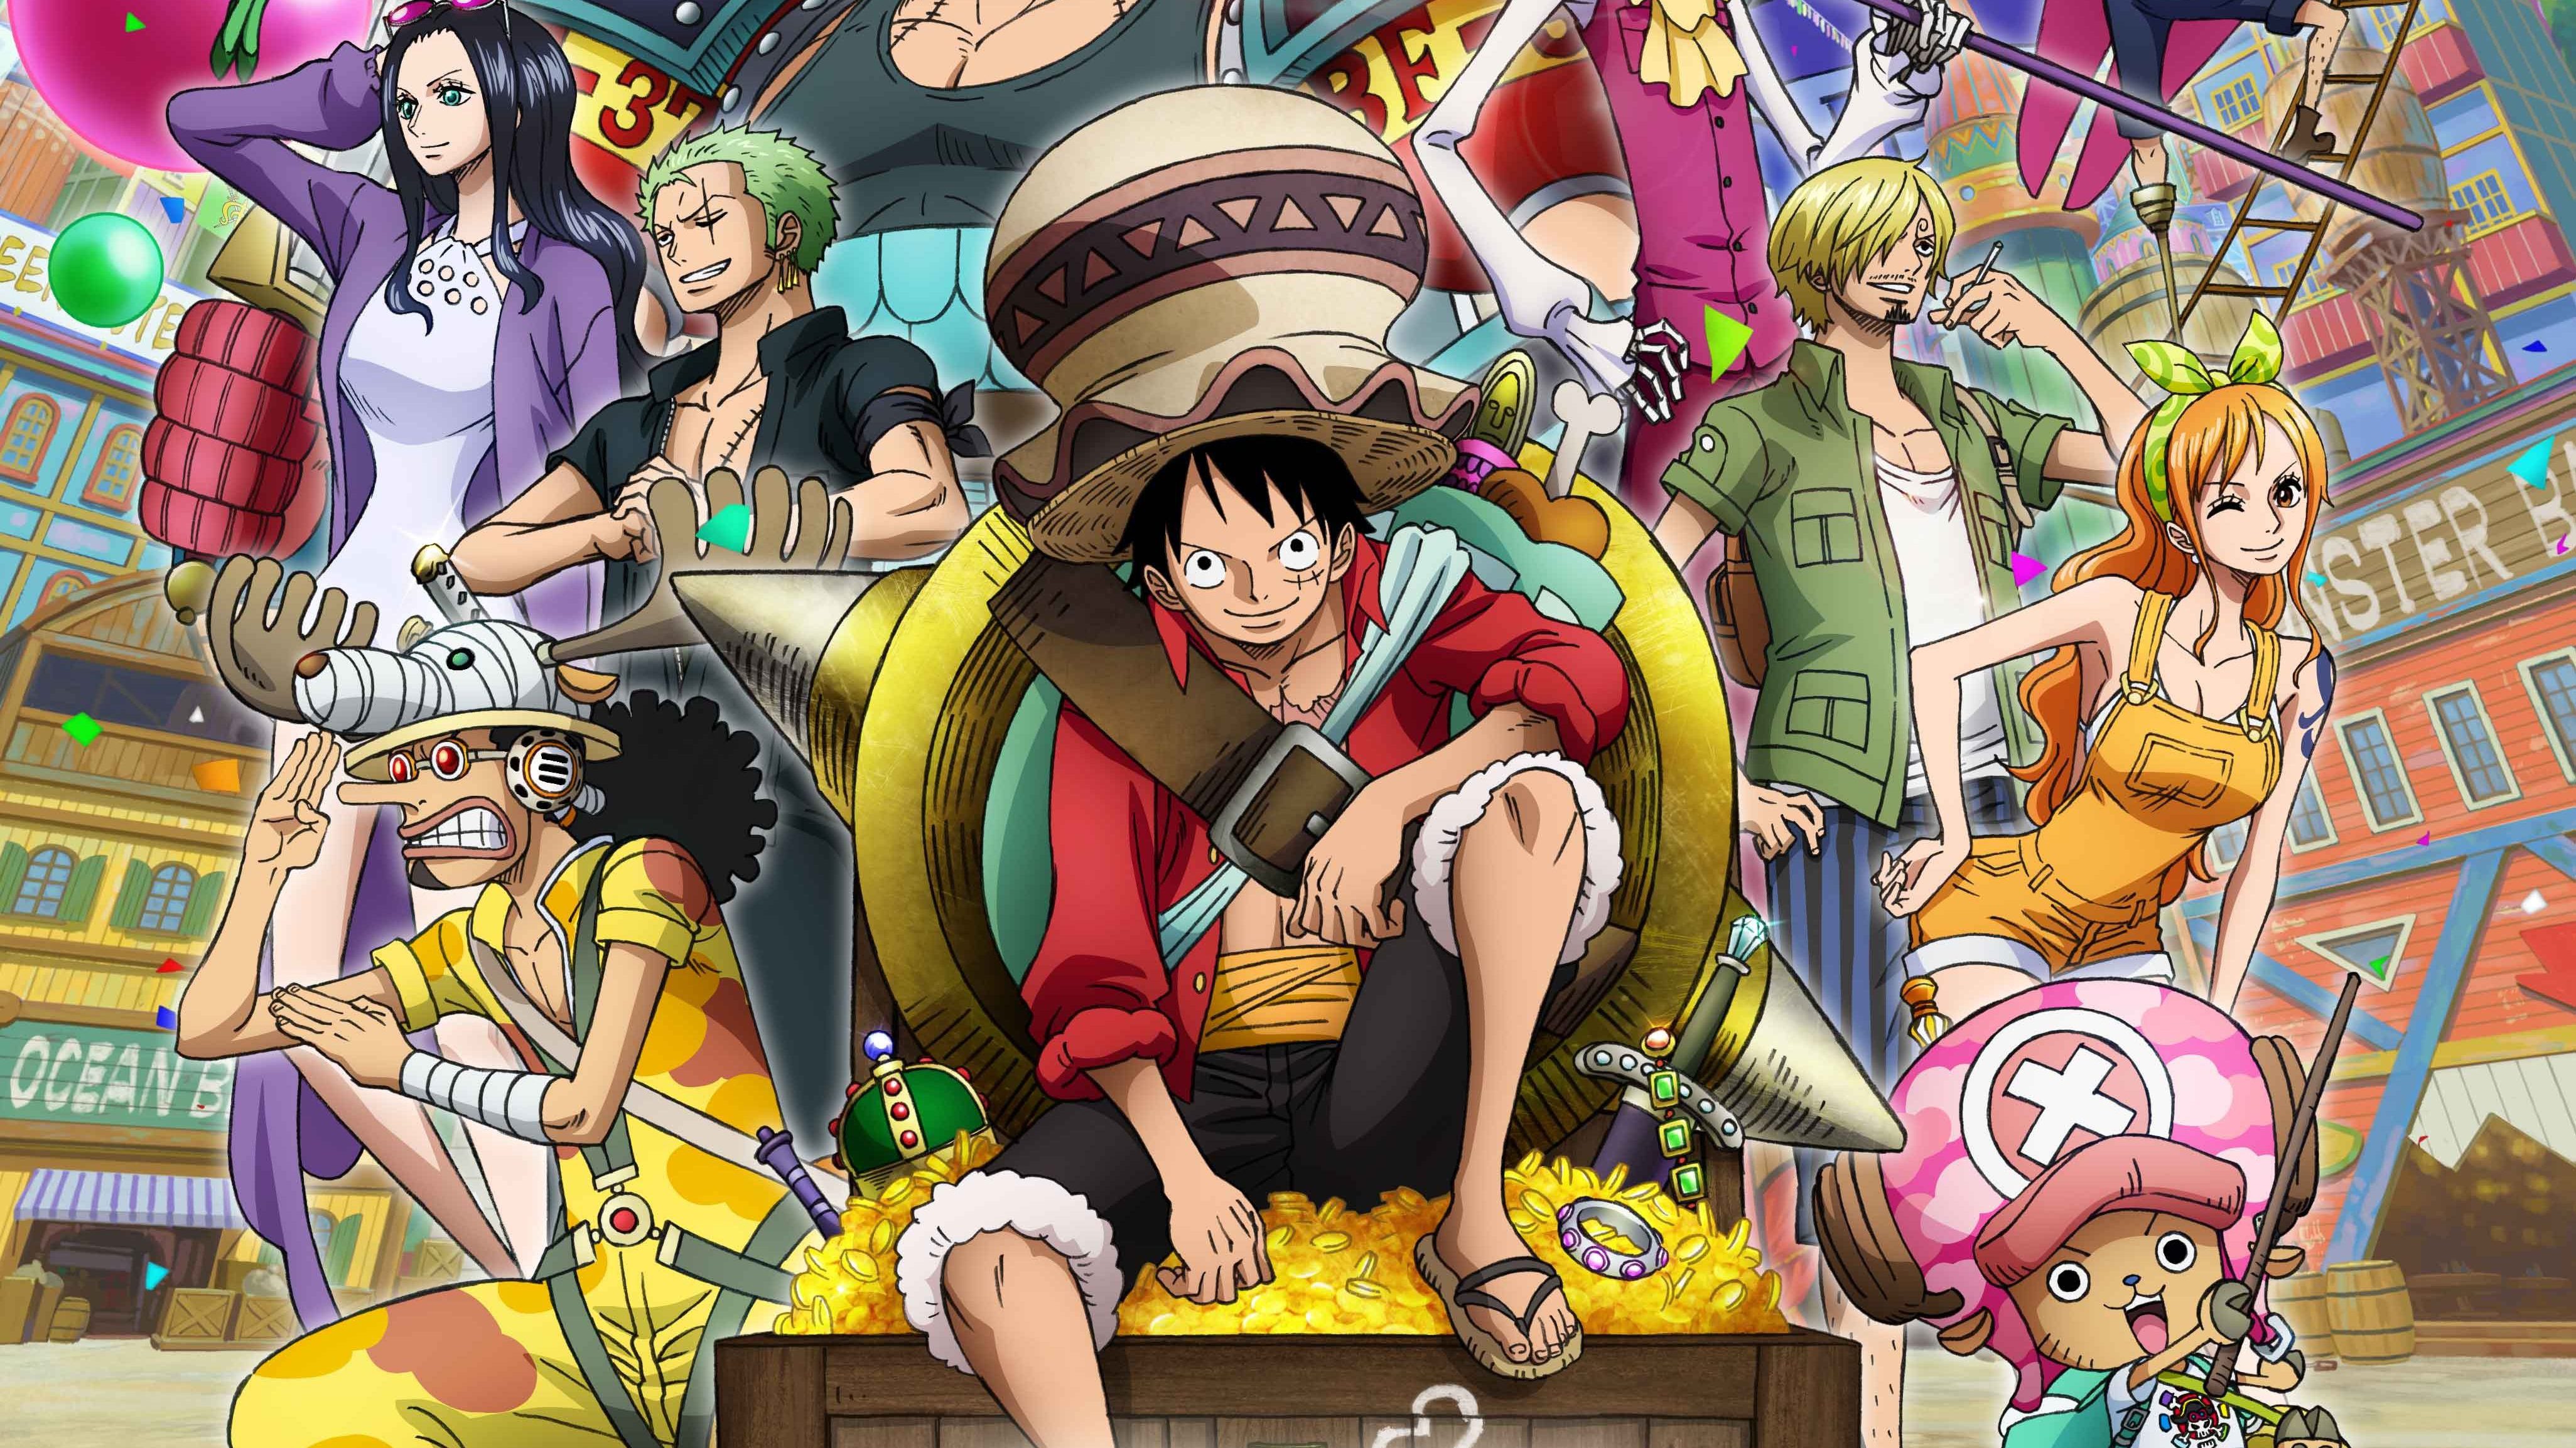 Mô Hình One Piece Băng Hải Tặc Mũ Rơm. Combo Bộ 9 Nhân Vật Anime - Giá  Sendo khuyến mãi: 145,000đ - Mua ngay! - Tư vấn mua sắm & tiêu dùng trực  tuyến Bigomart